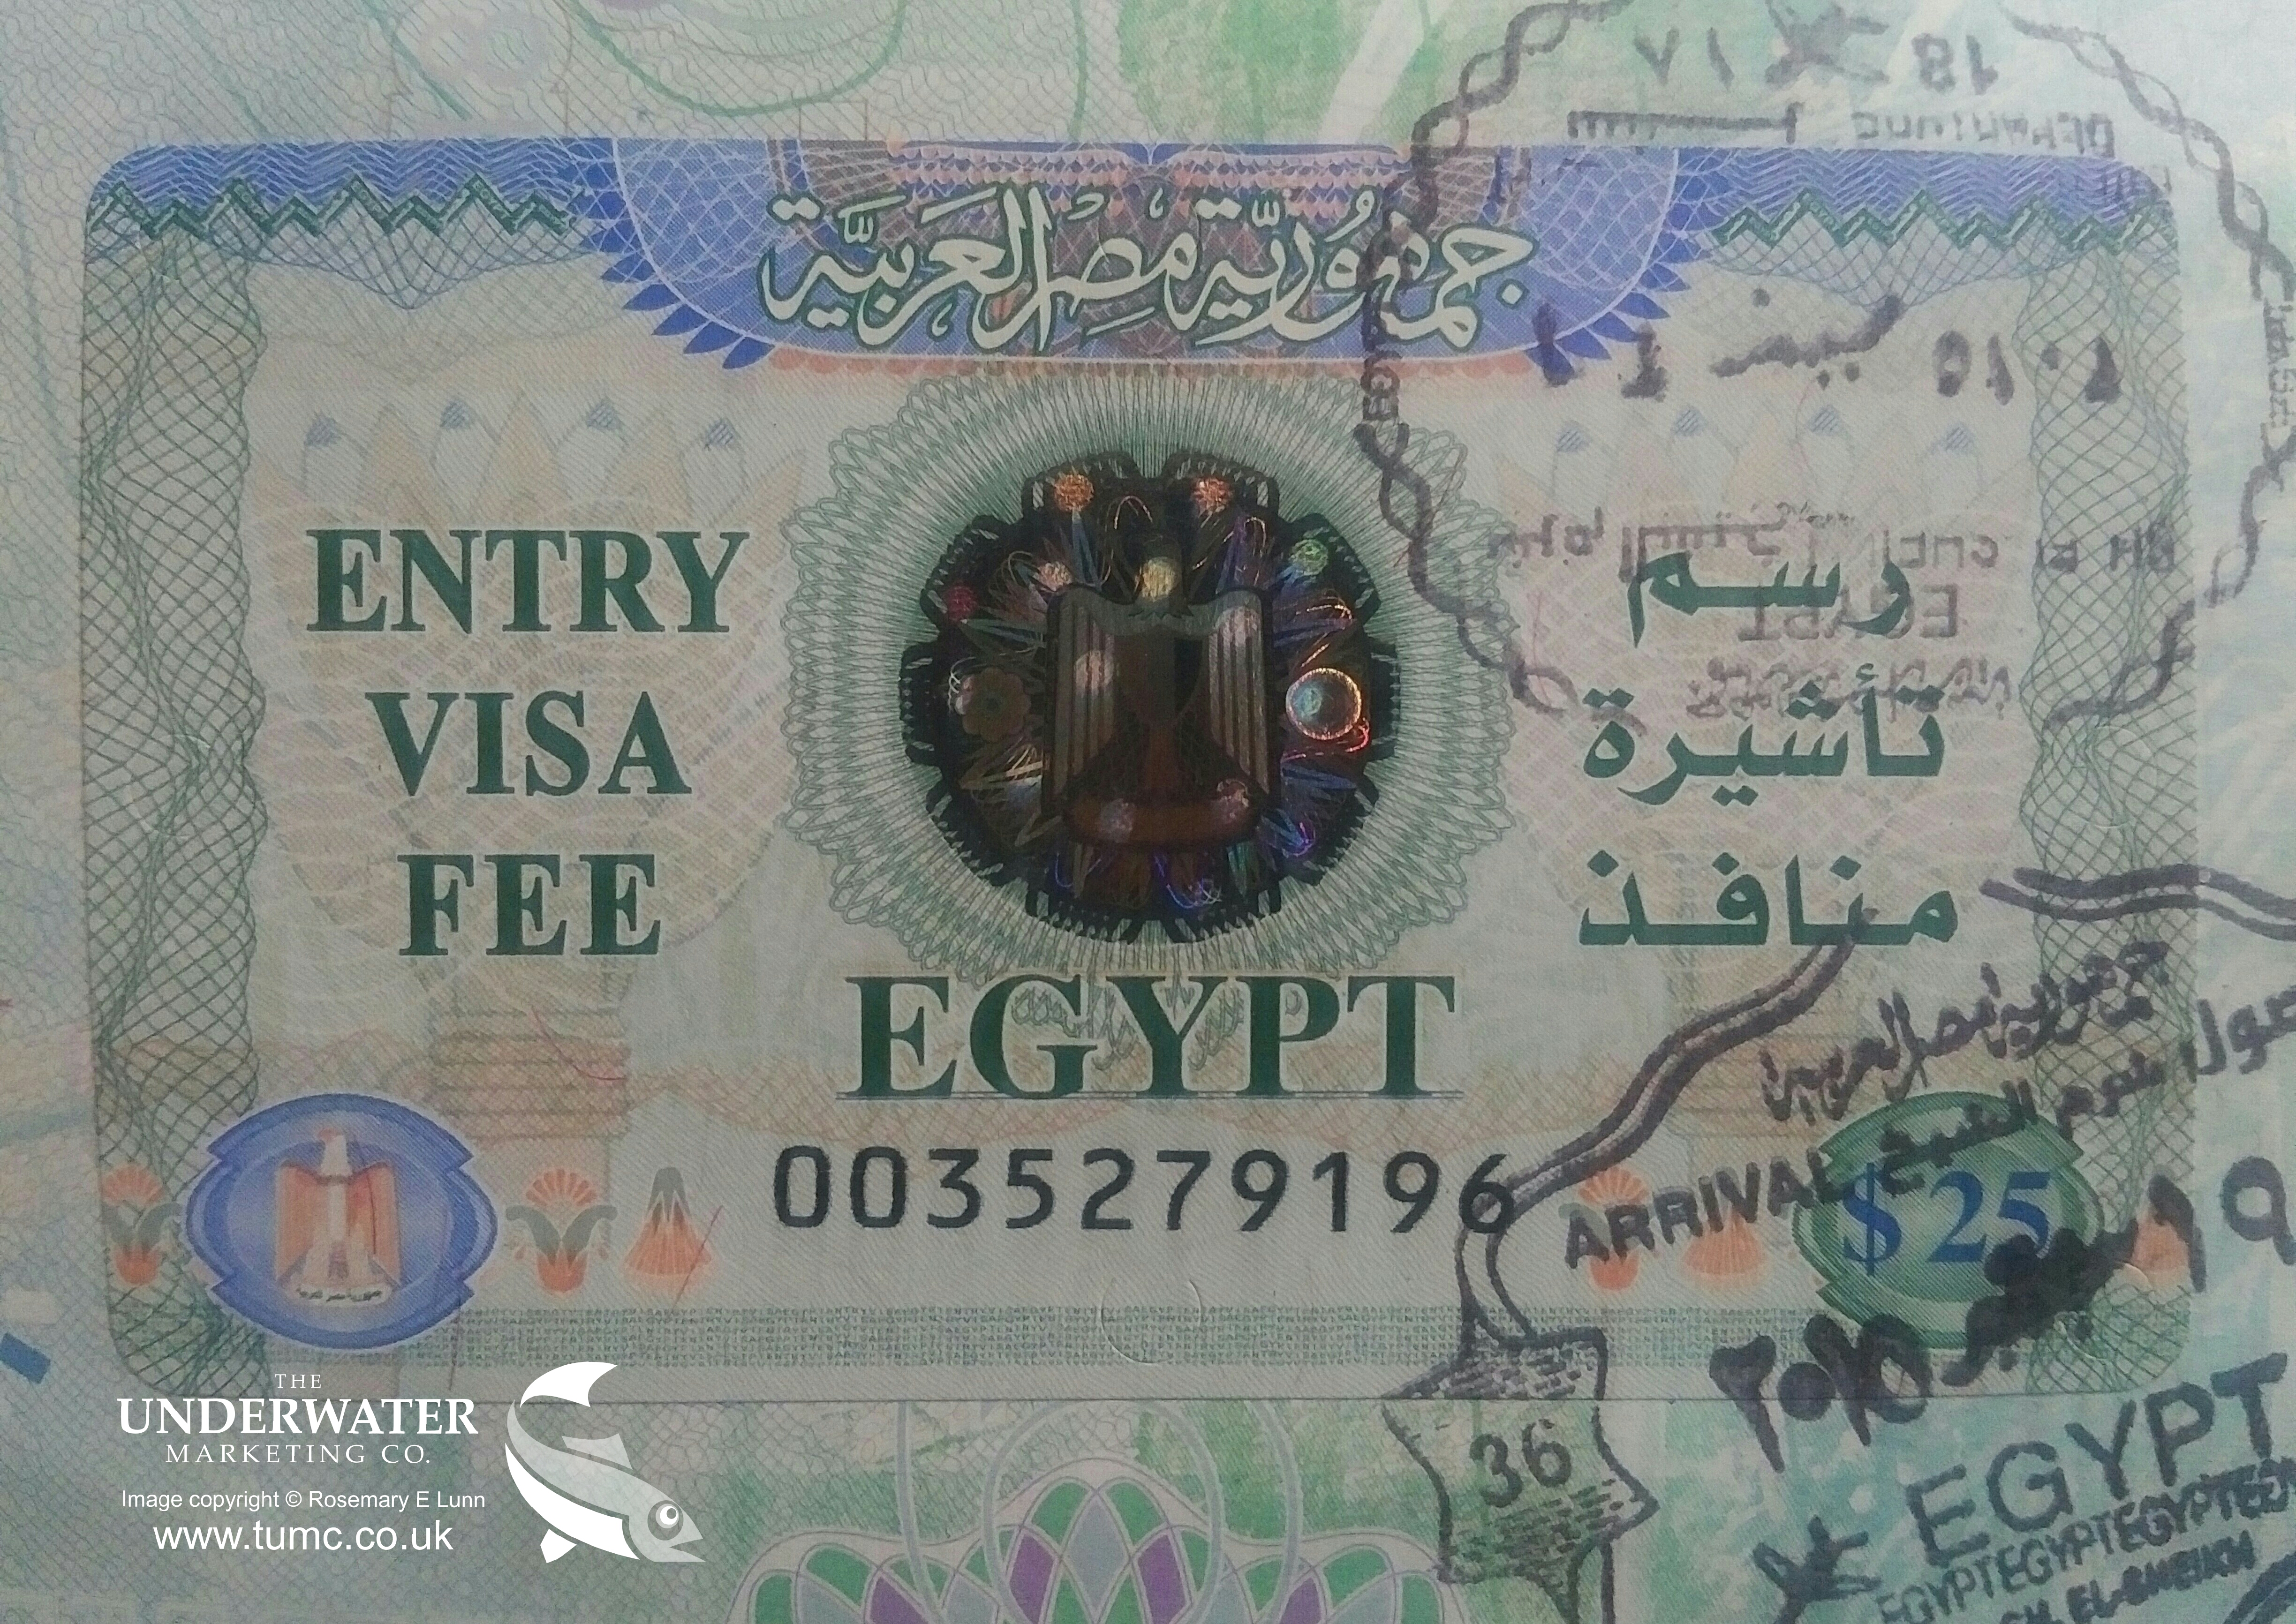 Entry visa. Виза в Египет. Марка Египет виза. Виза в Египет фото. Египетская виза для печати.